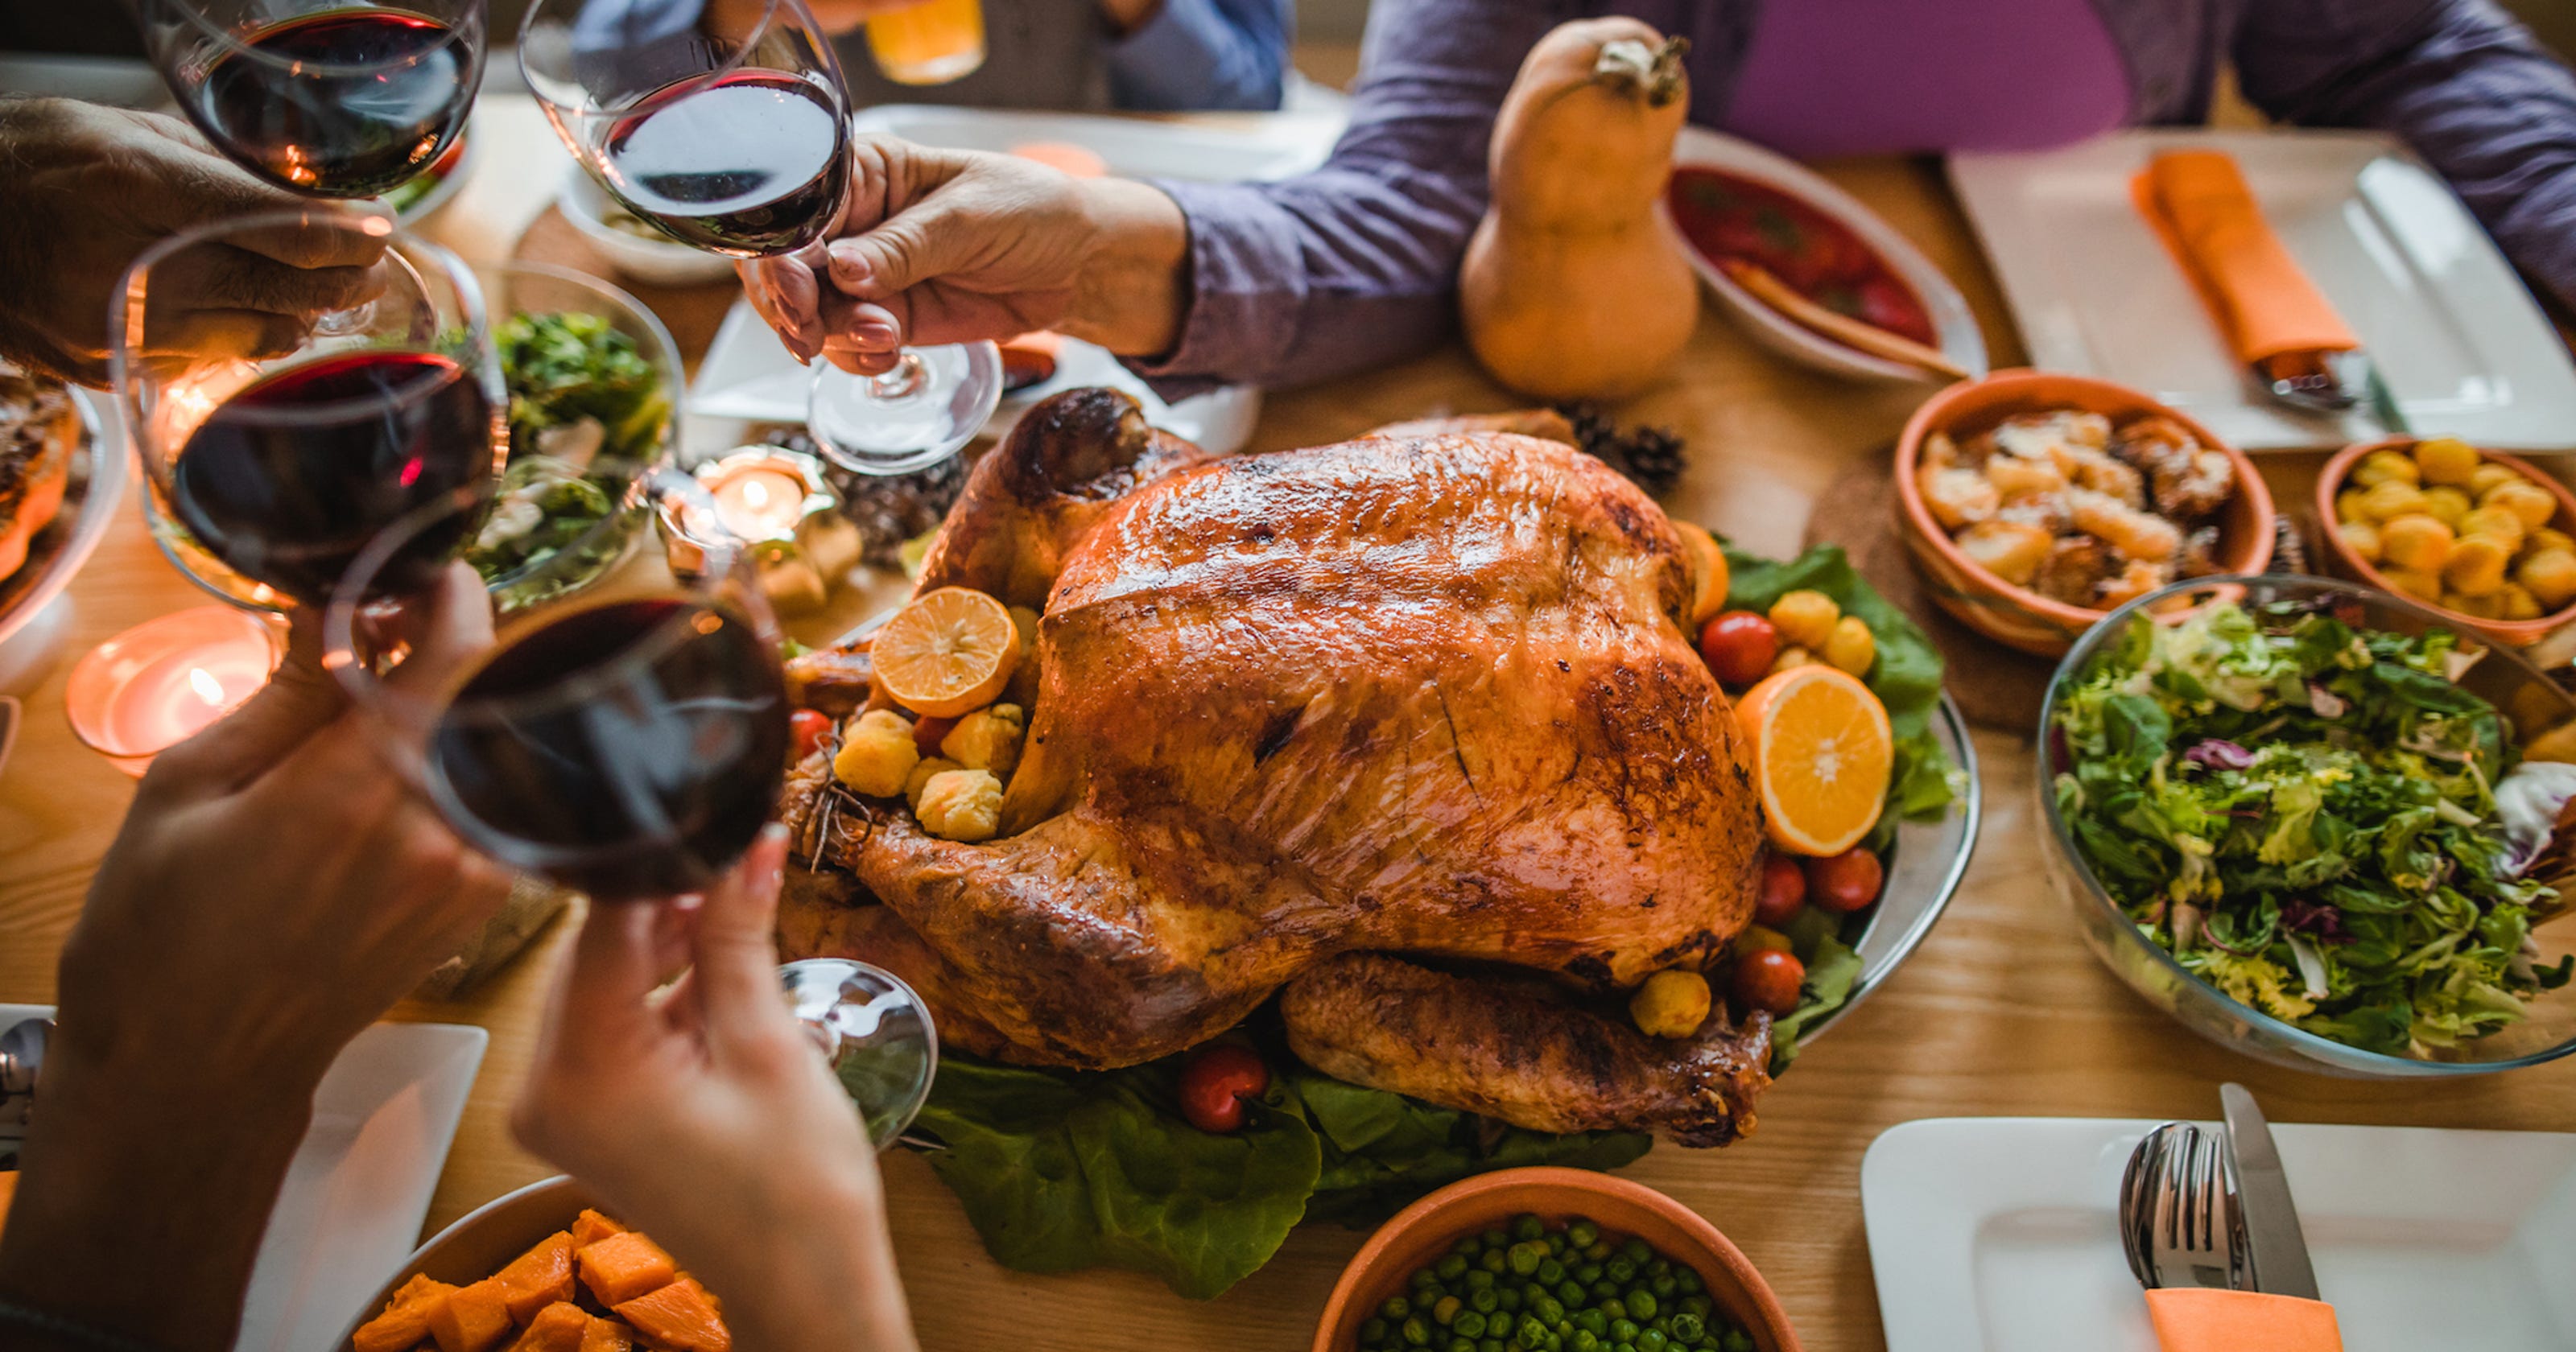 Thanksgiving, Christmas dinner recipes from Shreveport, Bossier chefs